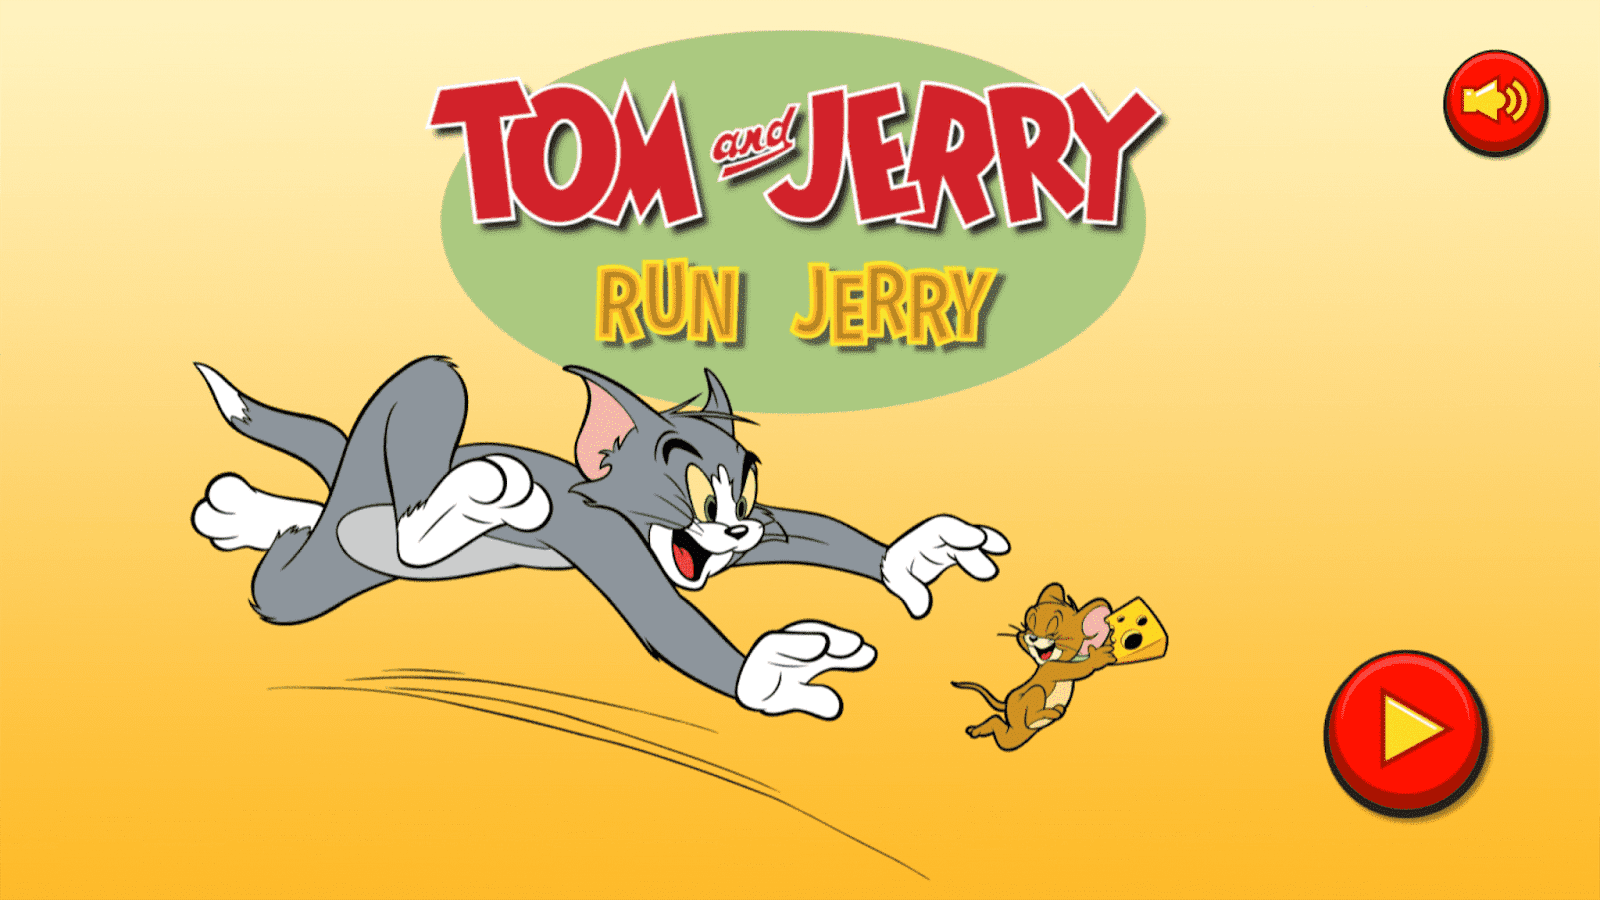 Игр й том. Том и Джерри. Том и Джерри Джерри. Том и Джерри игра. Том и Джерри бегут.